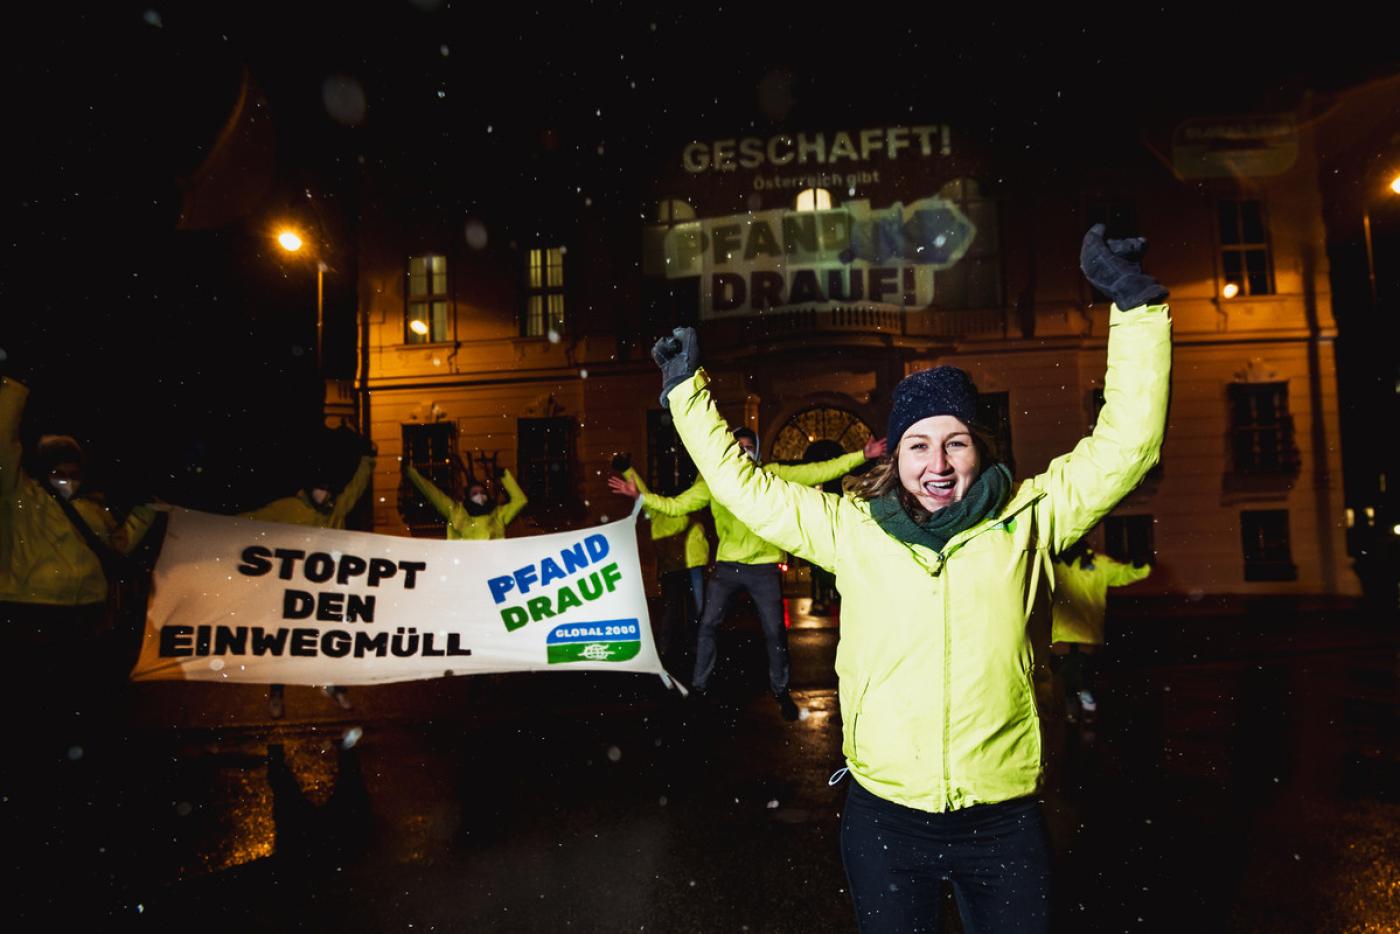 Eine Gruppe GLOBAL 2000 Aktivist:innen in gelben Jacken stehen vor dem Bundeskanzleramt in der Nacht und jubeln. Ein Banner auf dem "Stoppt den Einwegmüll" steht, wird von den Aktivist:innen gehalten. 